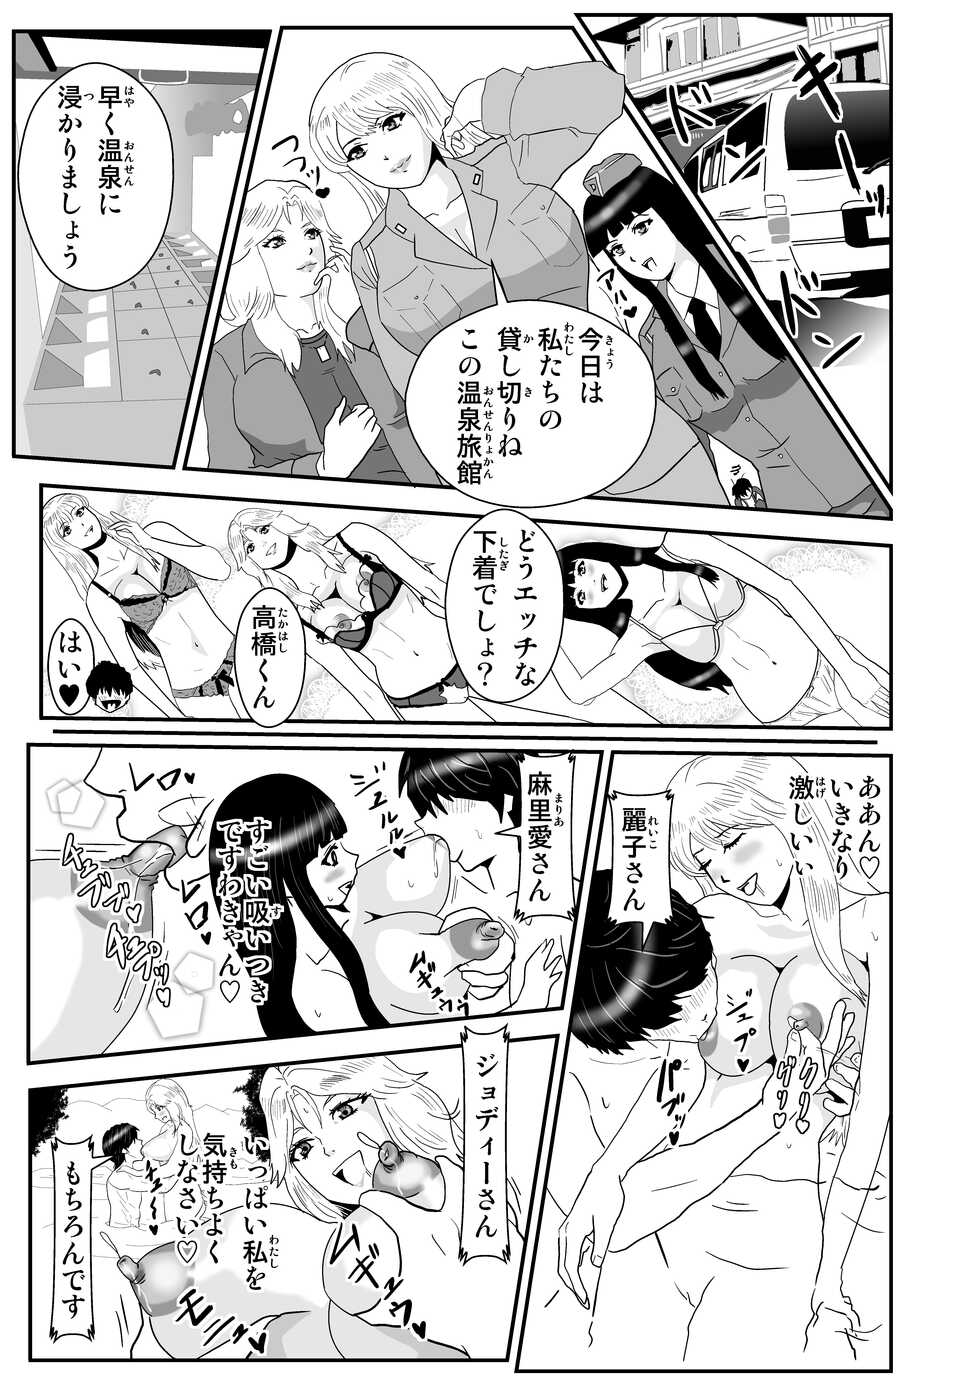 [Nobuyuki] Kochikame no Yama no Onsen Ryokan Kashikiri H Zanmai (Kochikame) - Page 1